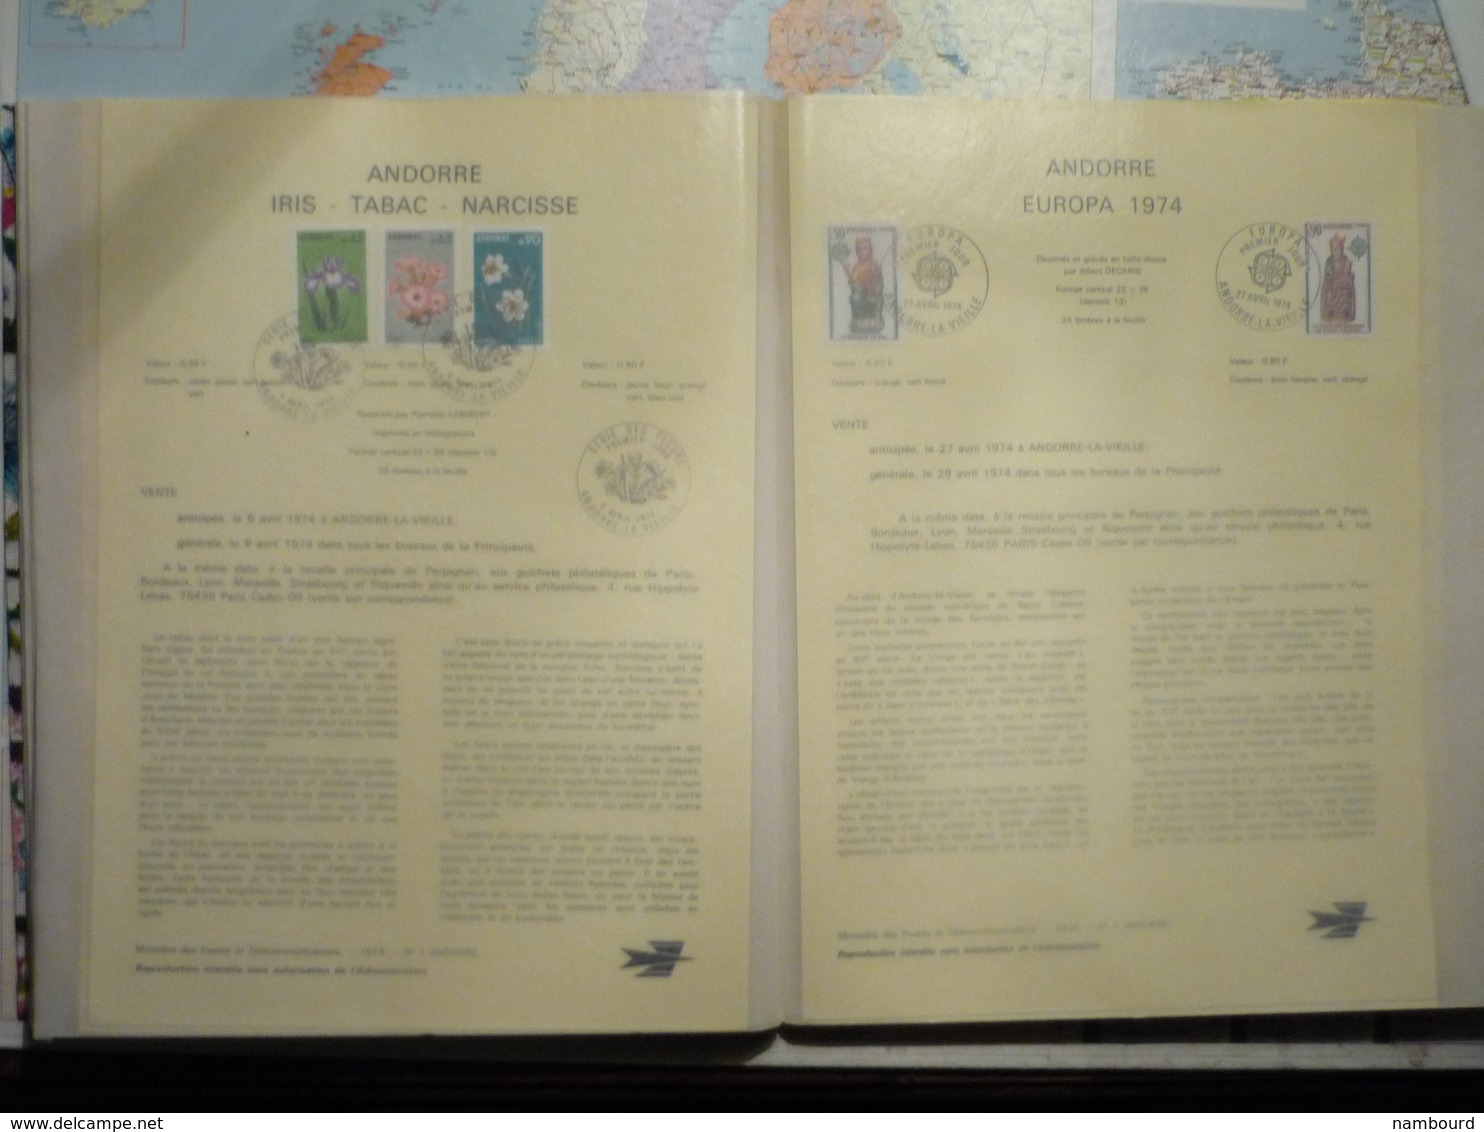 Collection de feuillets FDC La Poste du Club des Amateurs d'Oblitérations Philatéliques 1972 à 1980 dans 2 classeurs